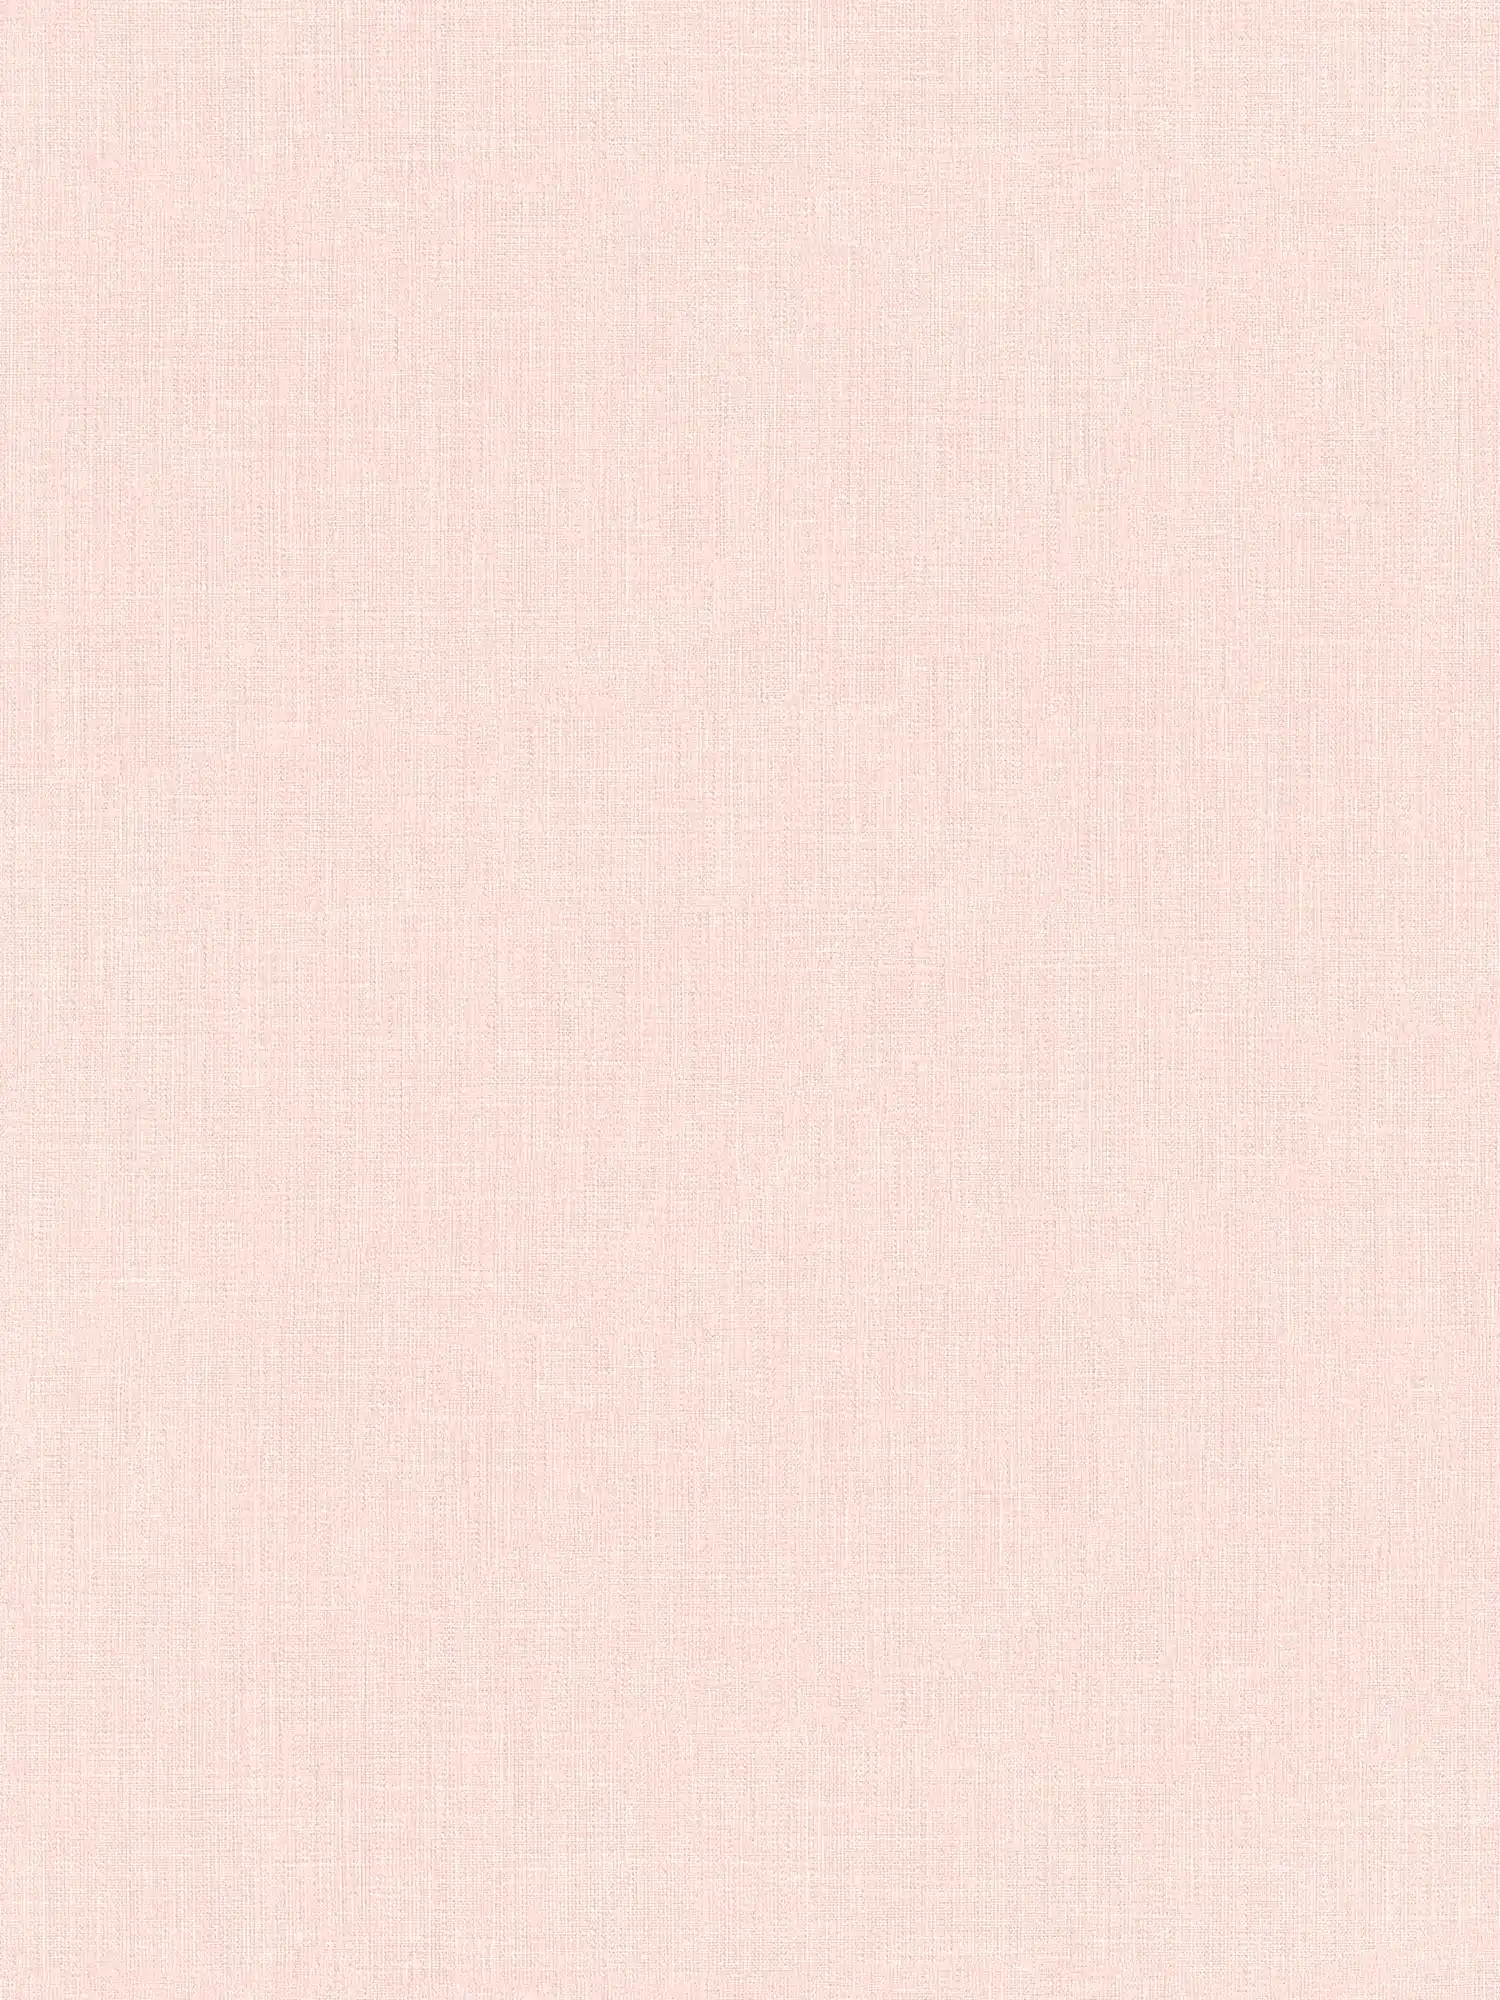 Pink wallpaper linen texture plain pastel
